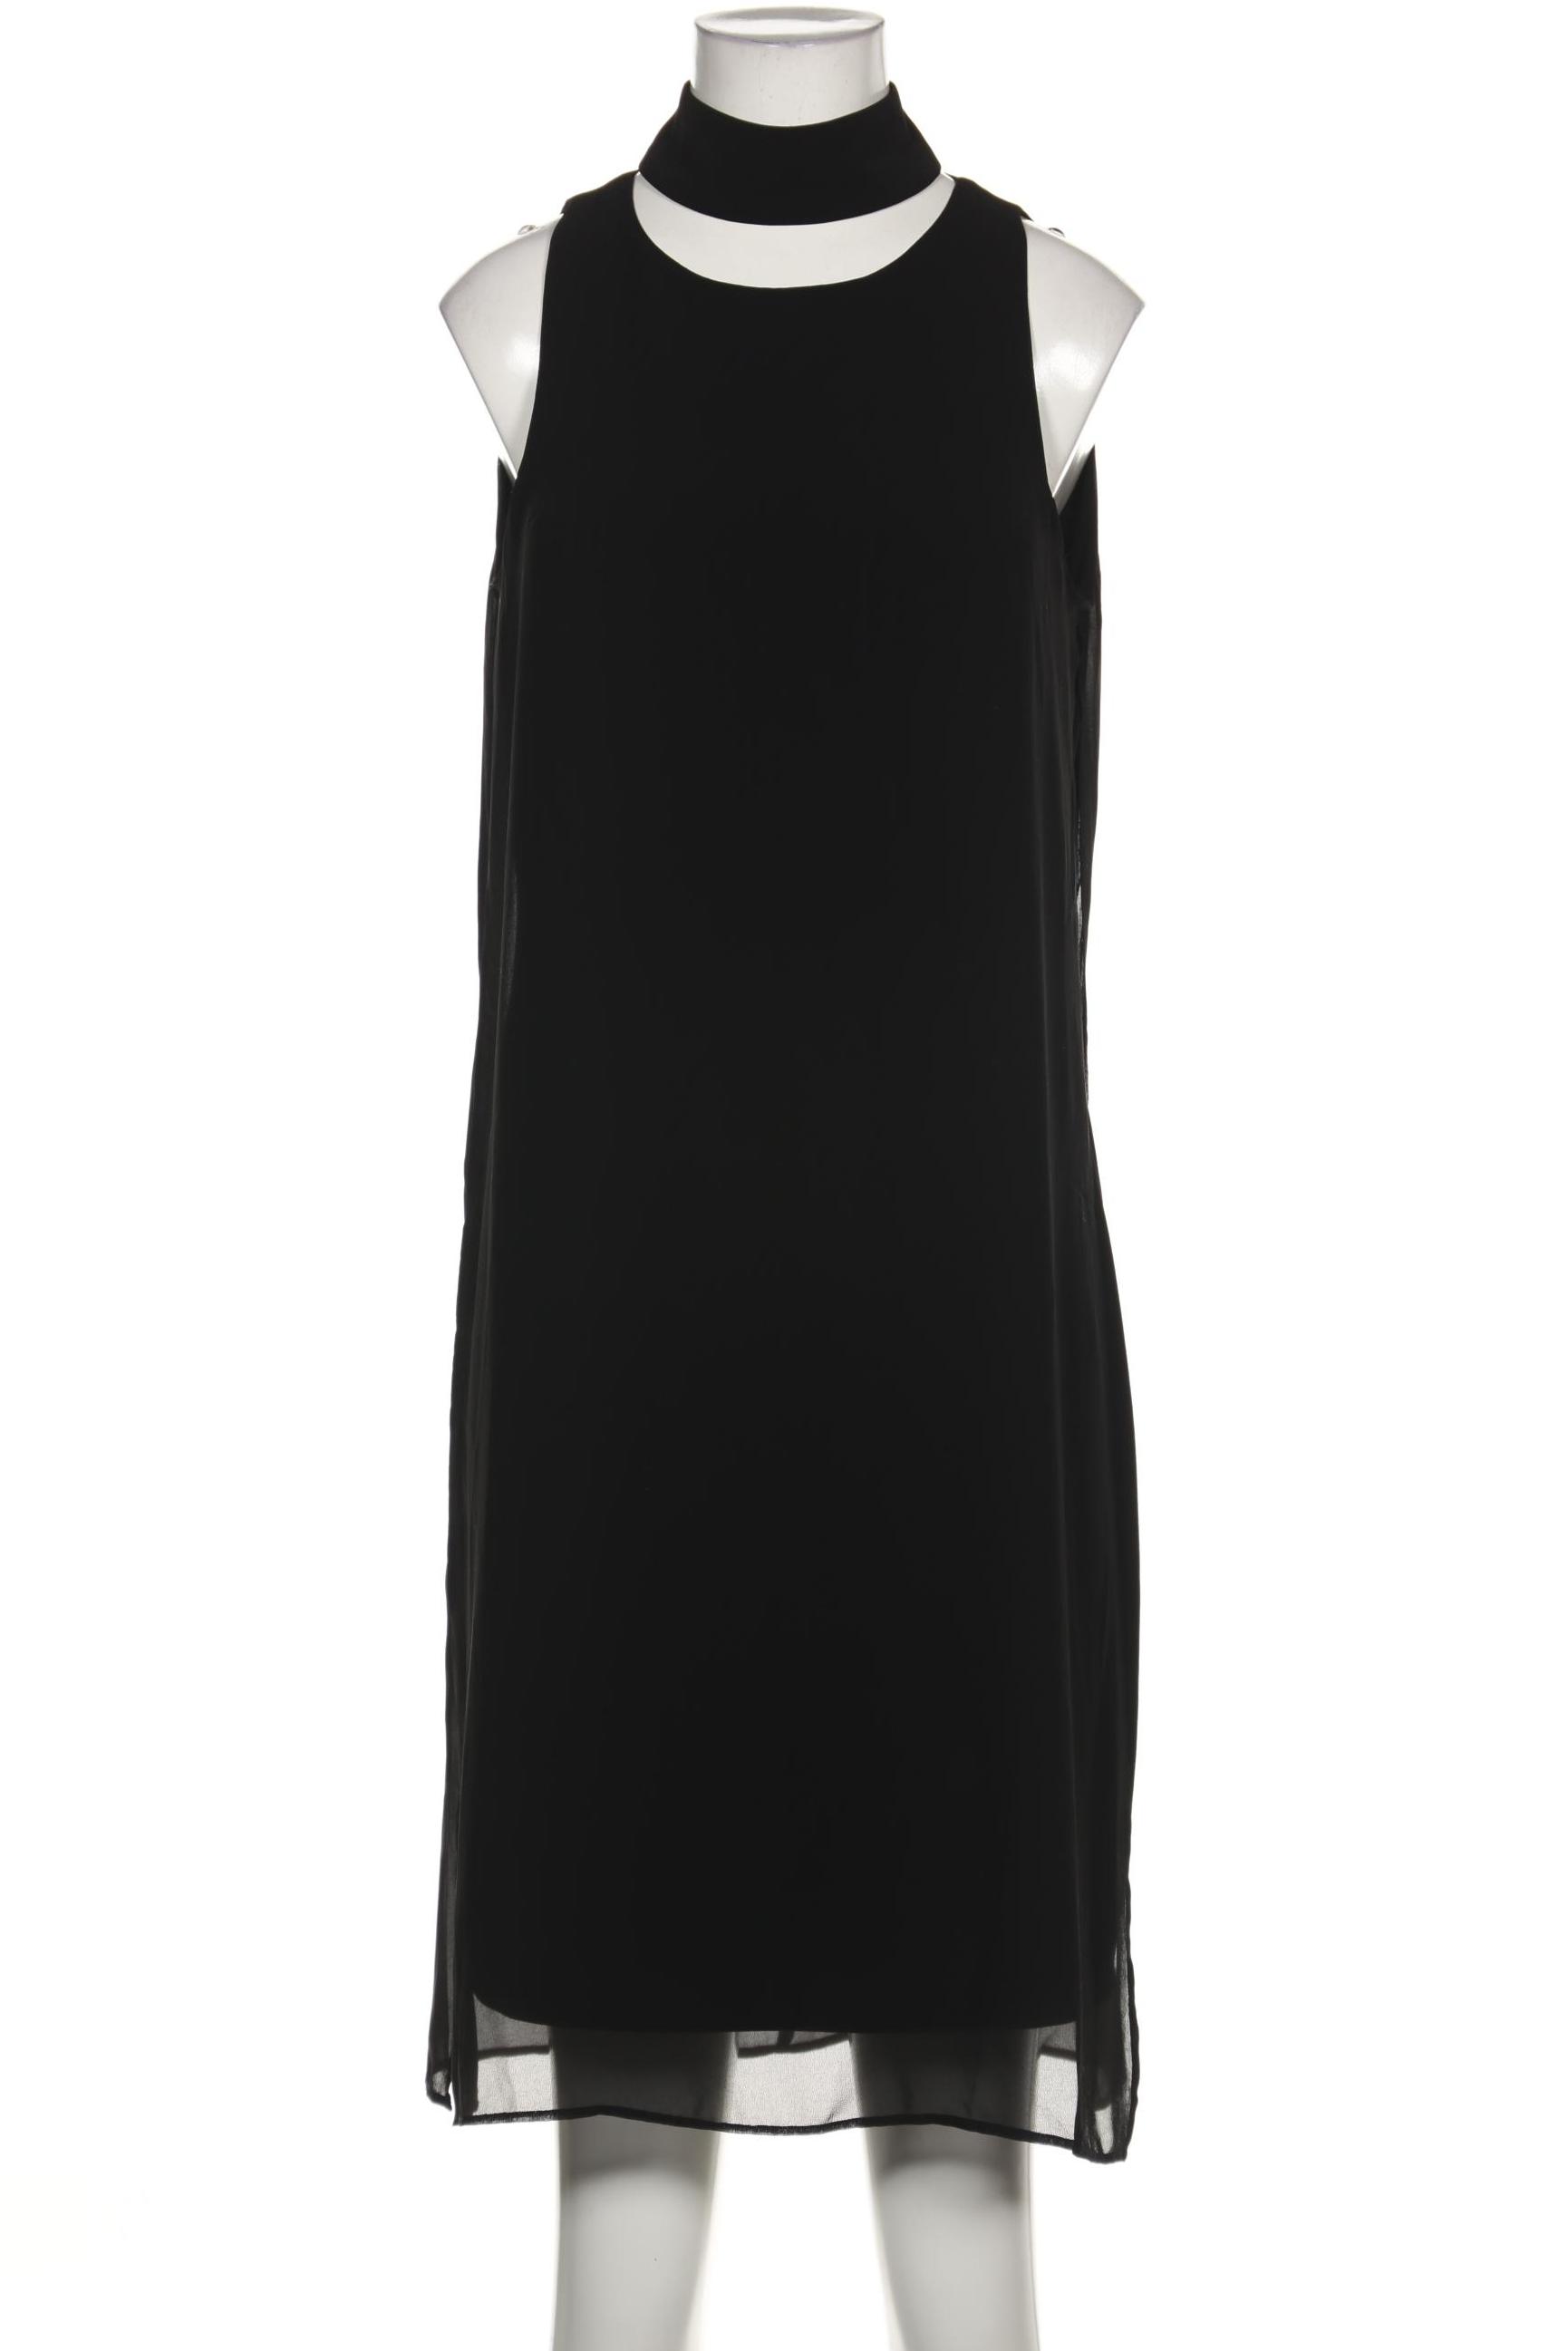 Ashley Brooke Damen Kleid, schwarz, Gr. 36 von Ashley Brooke